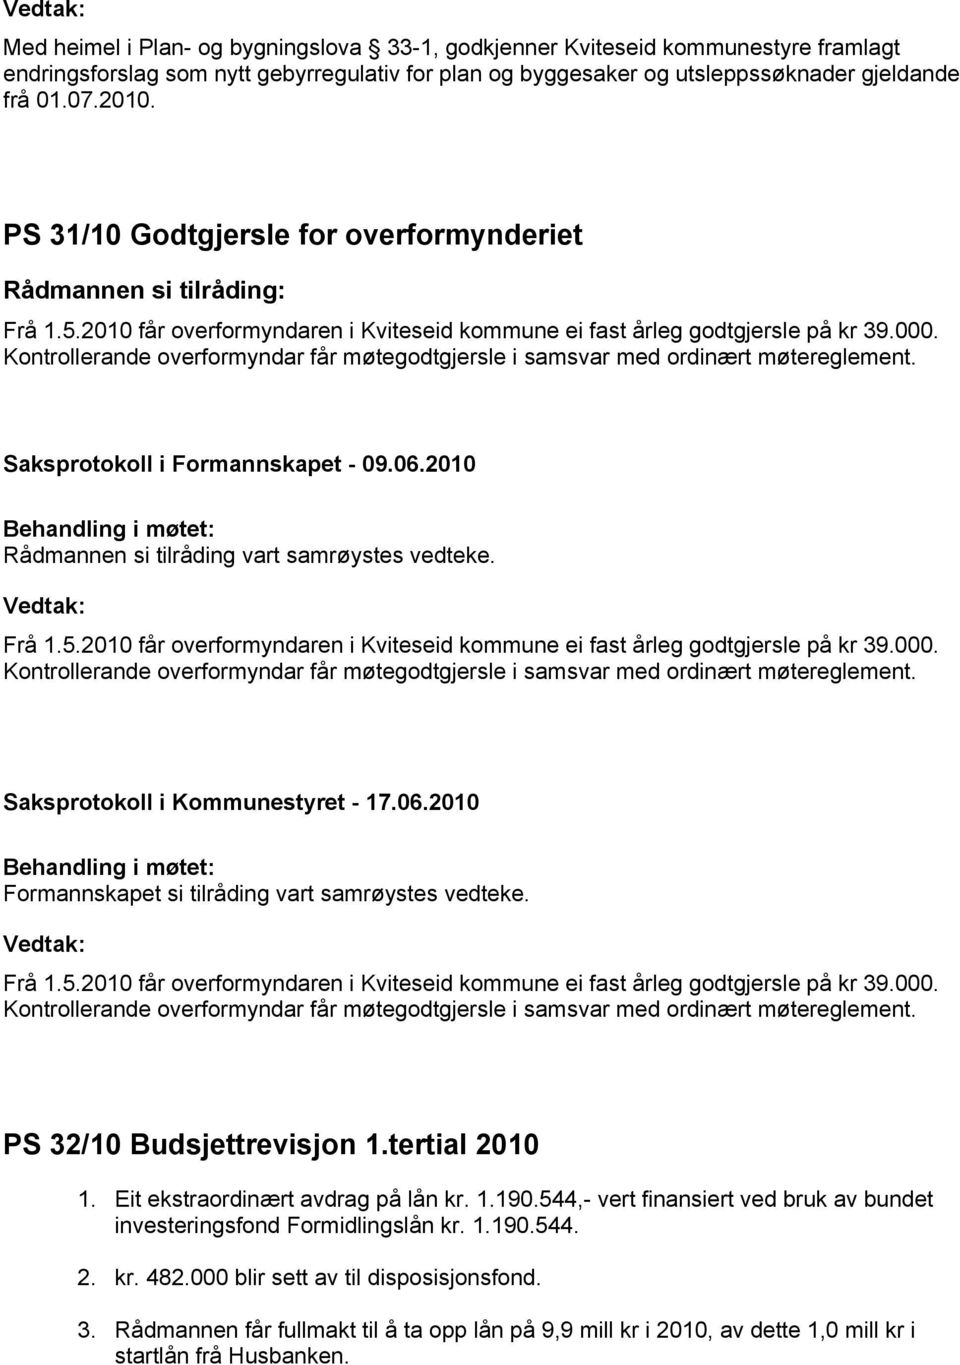 Kontrollerande overformyndar får møtegodtgjersle i samsvar med ordinært møtereglement. Frå 1.5.2010 får overformyndaren i Kviteseid kommune ei fast årleg godtgjersle på kr 39.000.